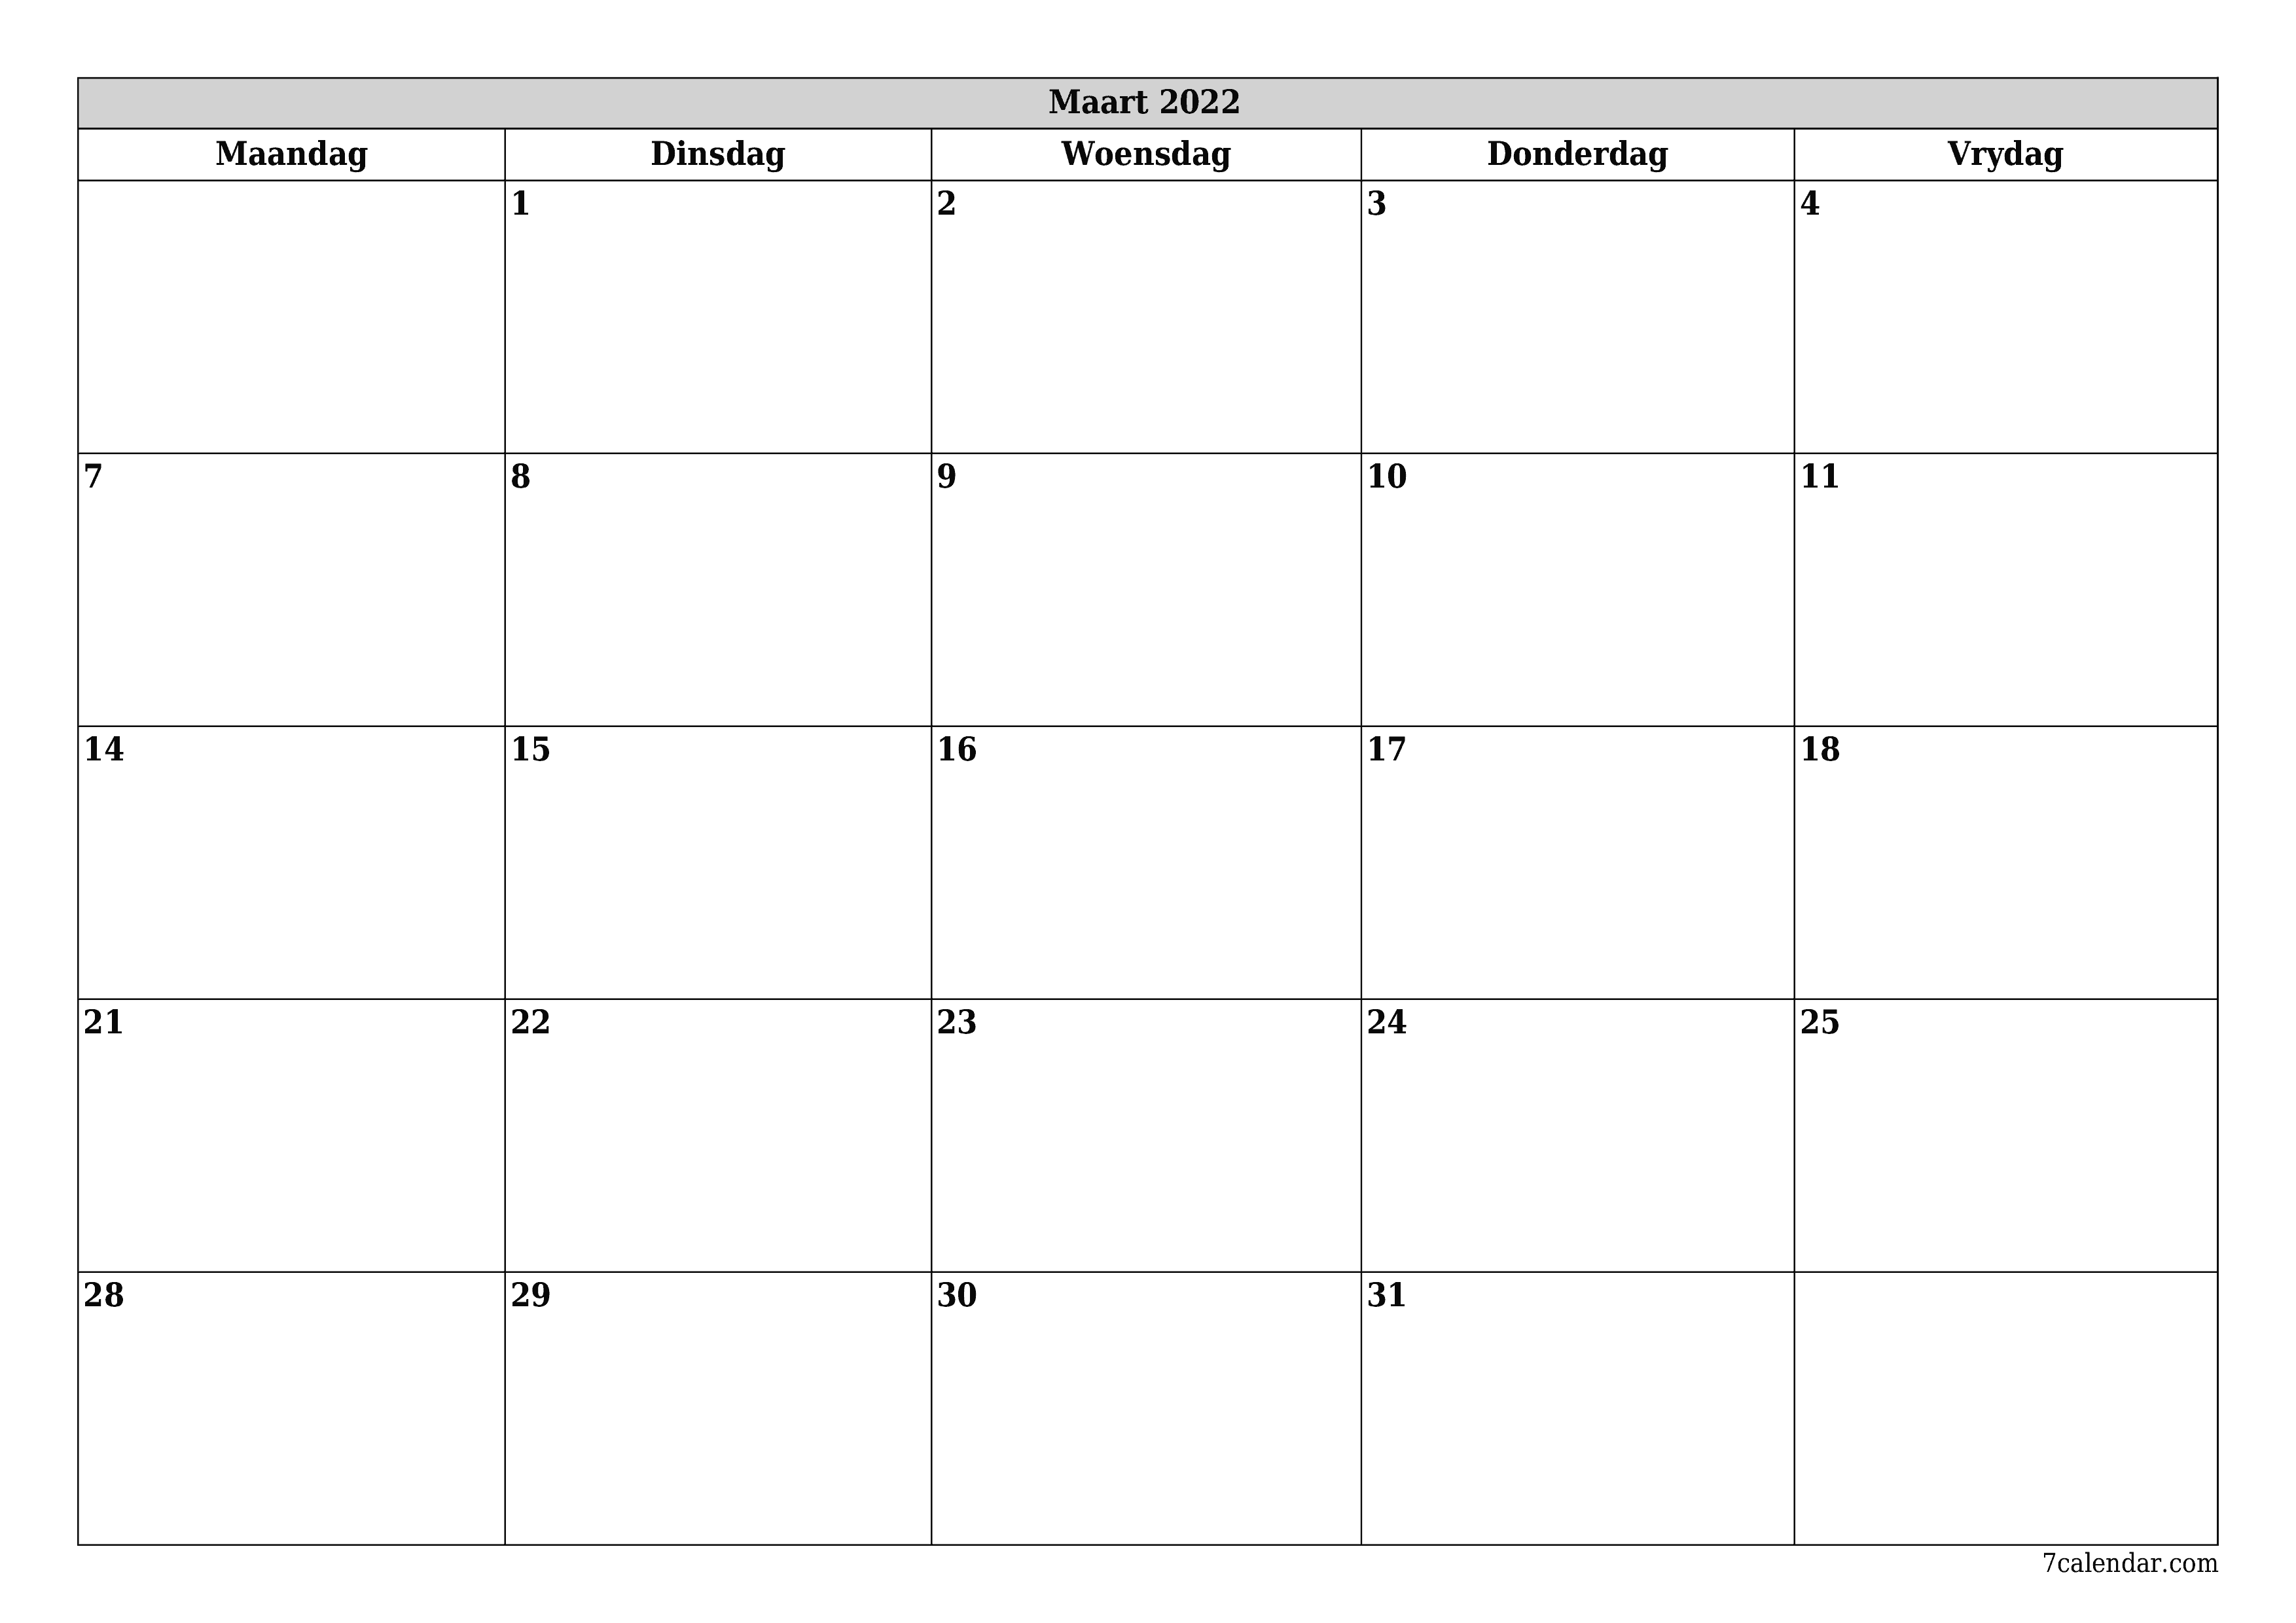 Leë maandelikse drukbare kalender en beplanner vir maand Maart 2022 met notas stoor en druk na PDF PNG Afrikaans